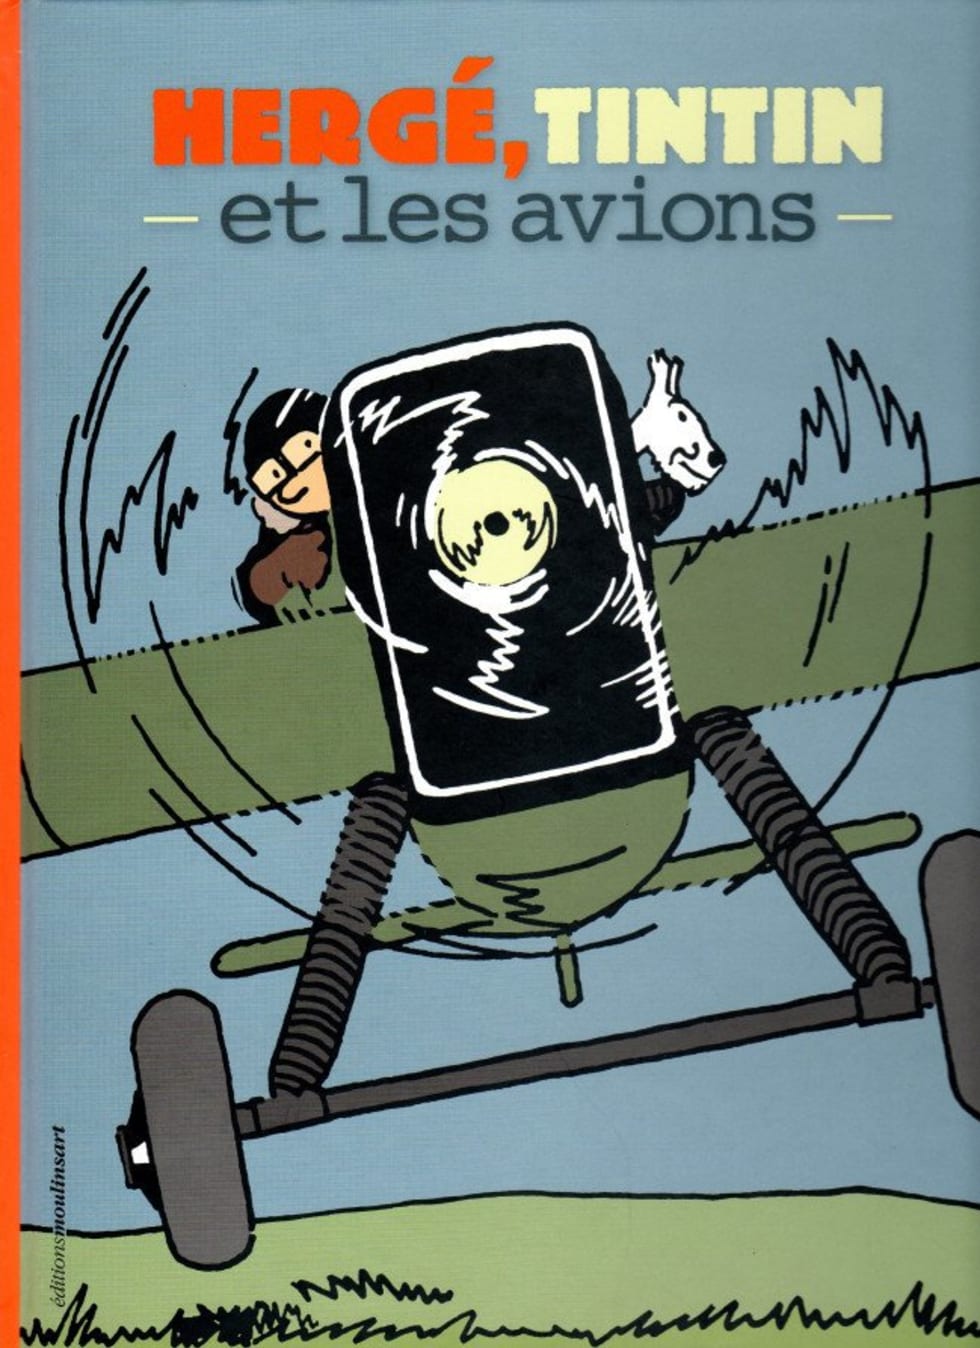 Bookcover “Hergé, Tintin et les avions”